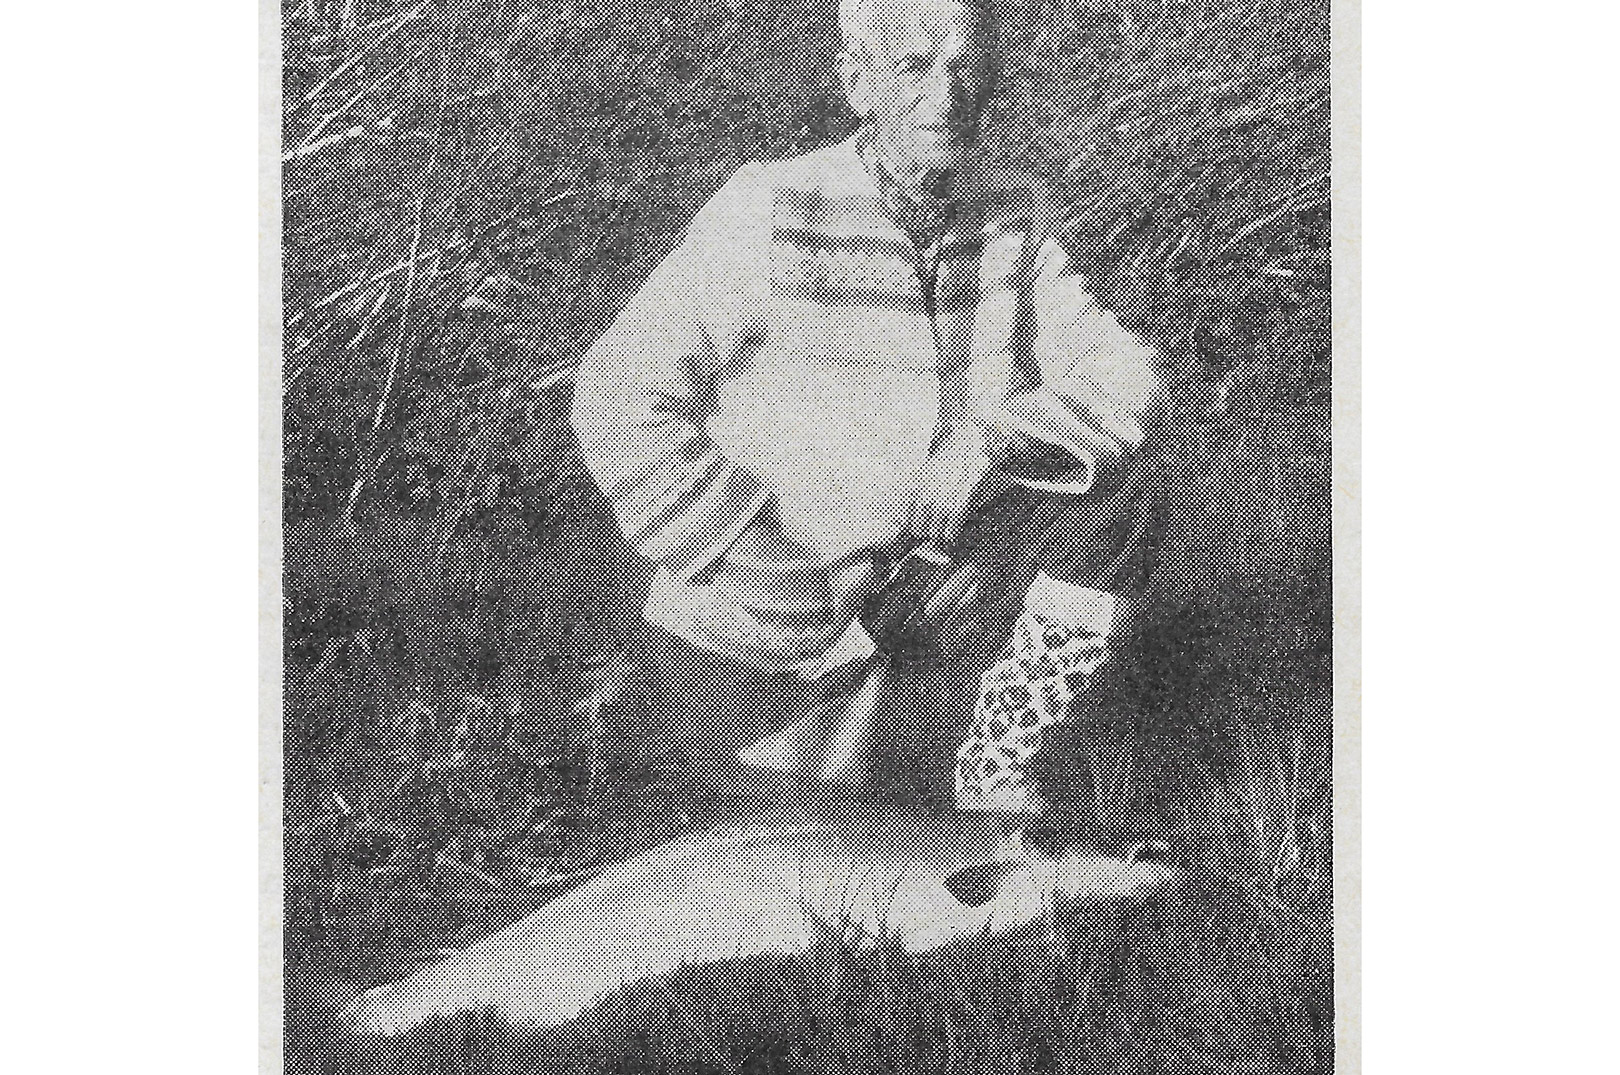 Et af de sidste billeder af Ludvig Svendsen. Taget i sommeren 1958, hvor han var på laksefiskeri i Namsen. (Fra Sportsfiskeren 1959)